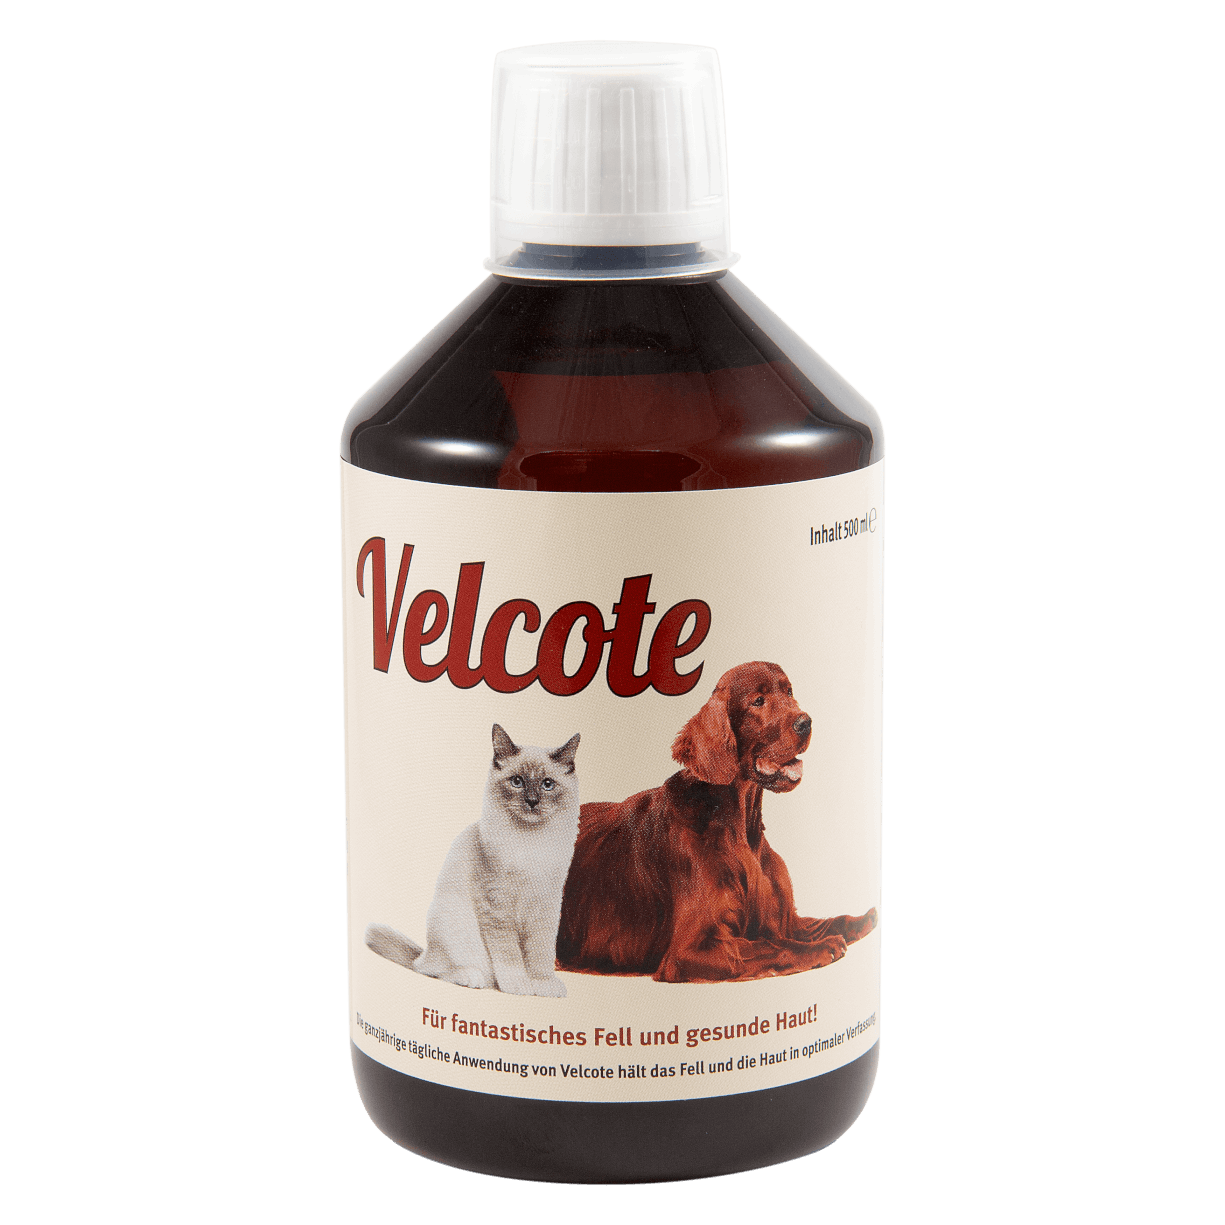 Velcote ist ein kaltgepresstes Nuss-, Weizenkeim- und Leinsamenöl mit einem guten Verhältnis von Omega-3- und Omega-6-Fettsäuren